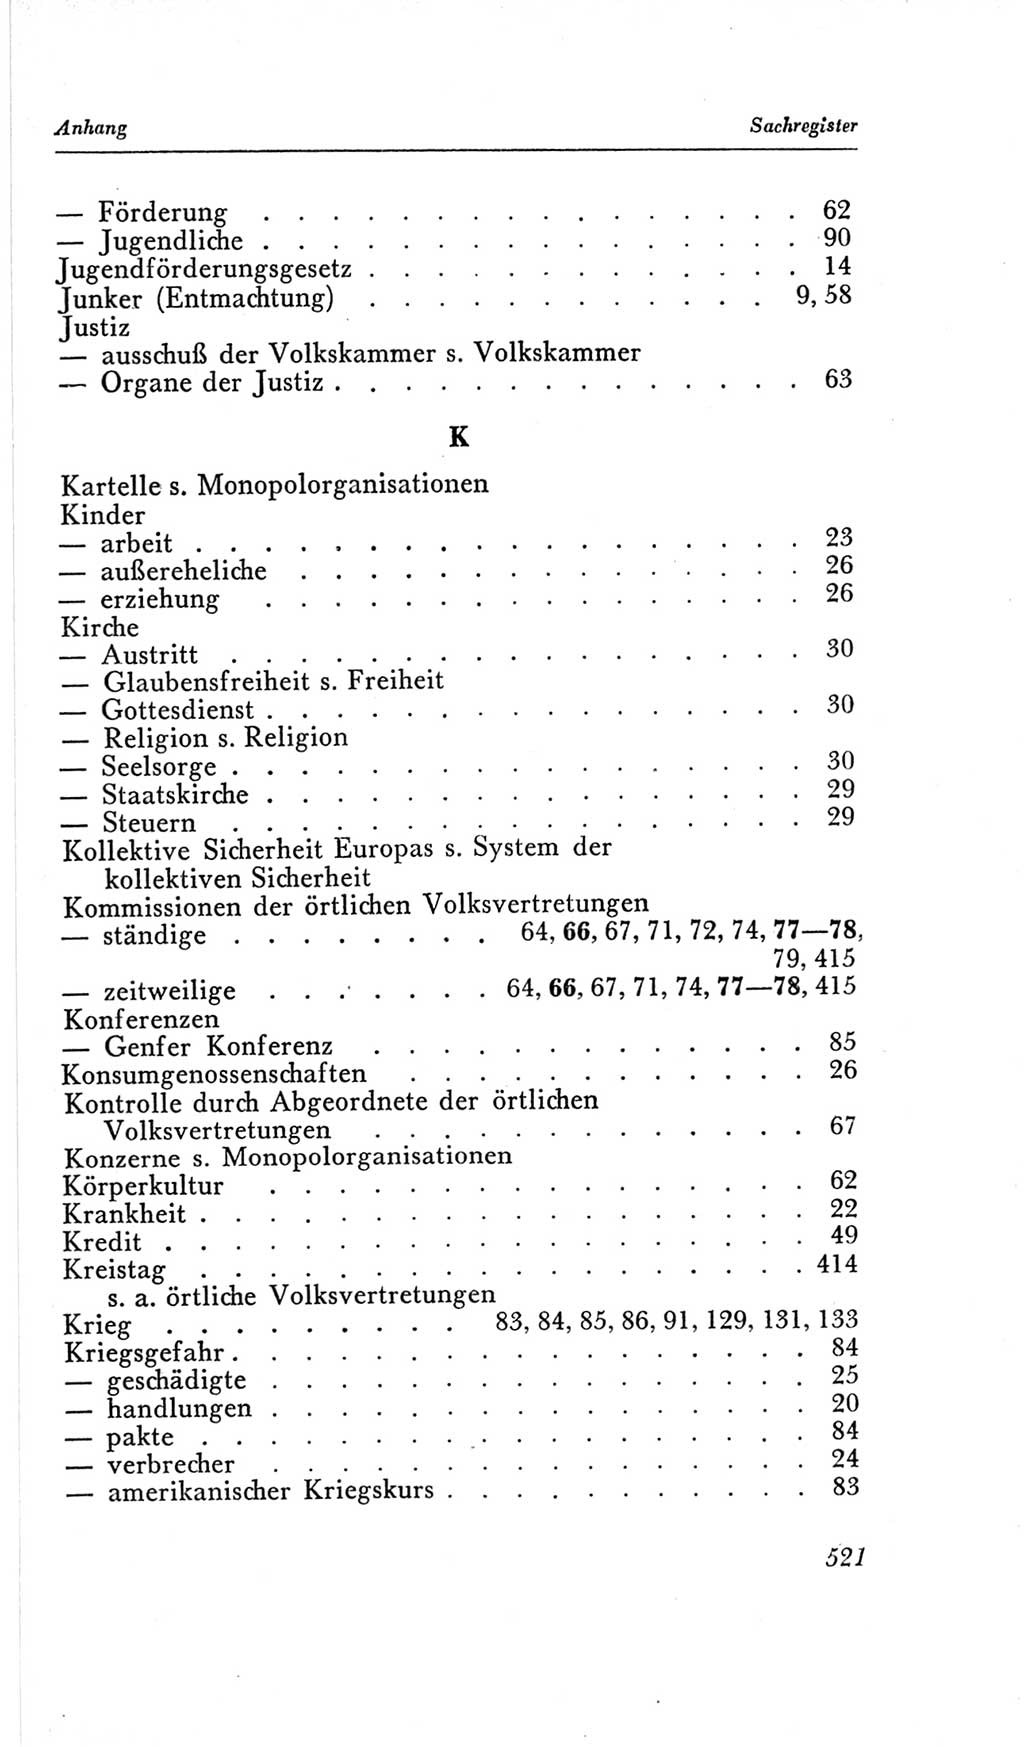 Handbuch der Volkskammer (VK) der Deutschen Demokratischen Republik (DDR), 2. Wahlperiode 1954-1958, Seite 521 (Hdb. VK. DDR, 2. WP. 1954-1958, S. 521)